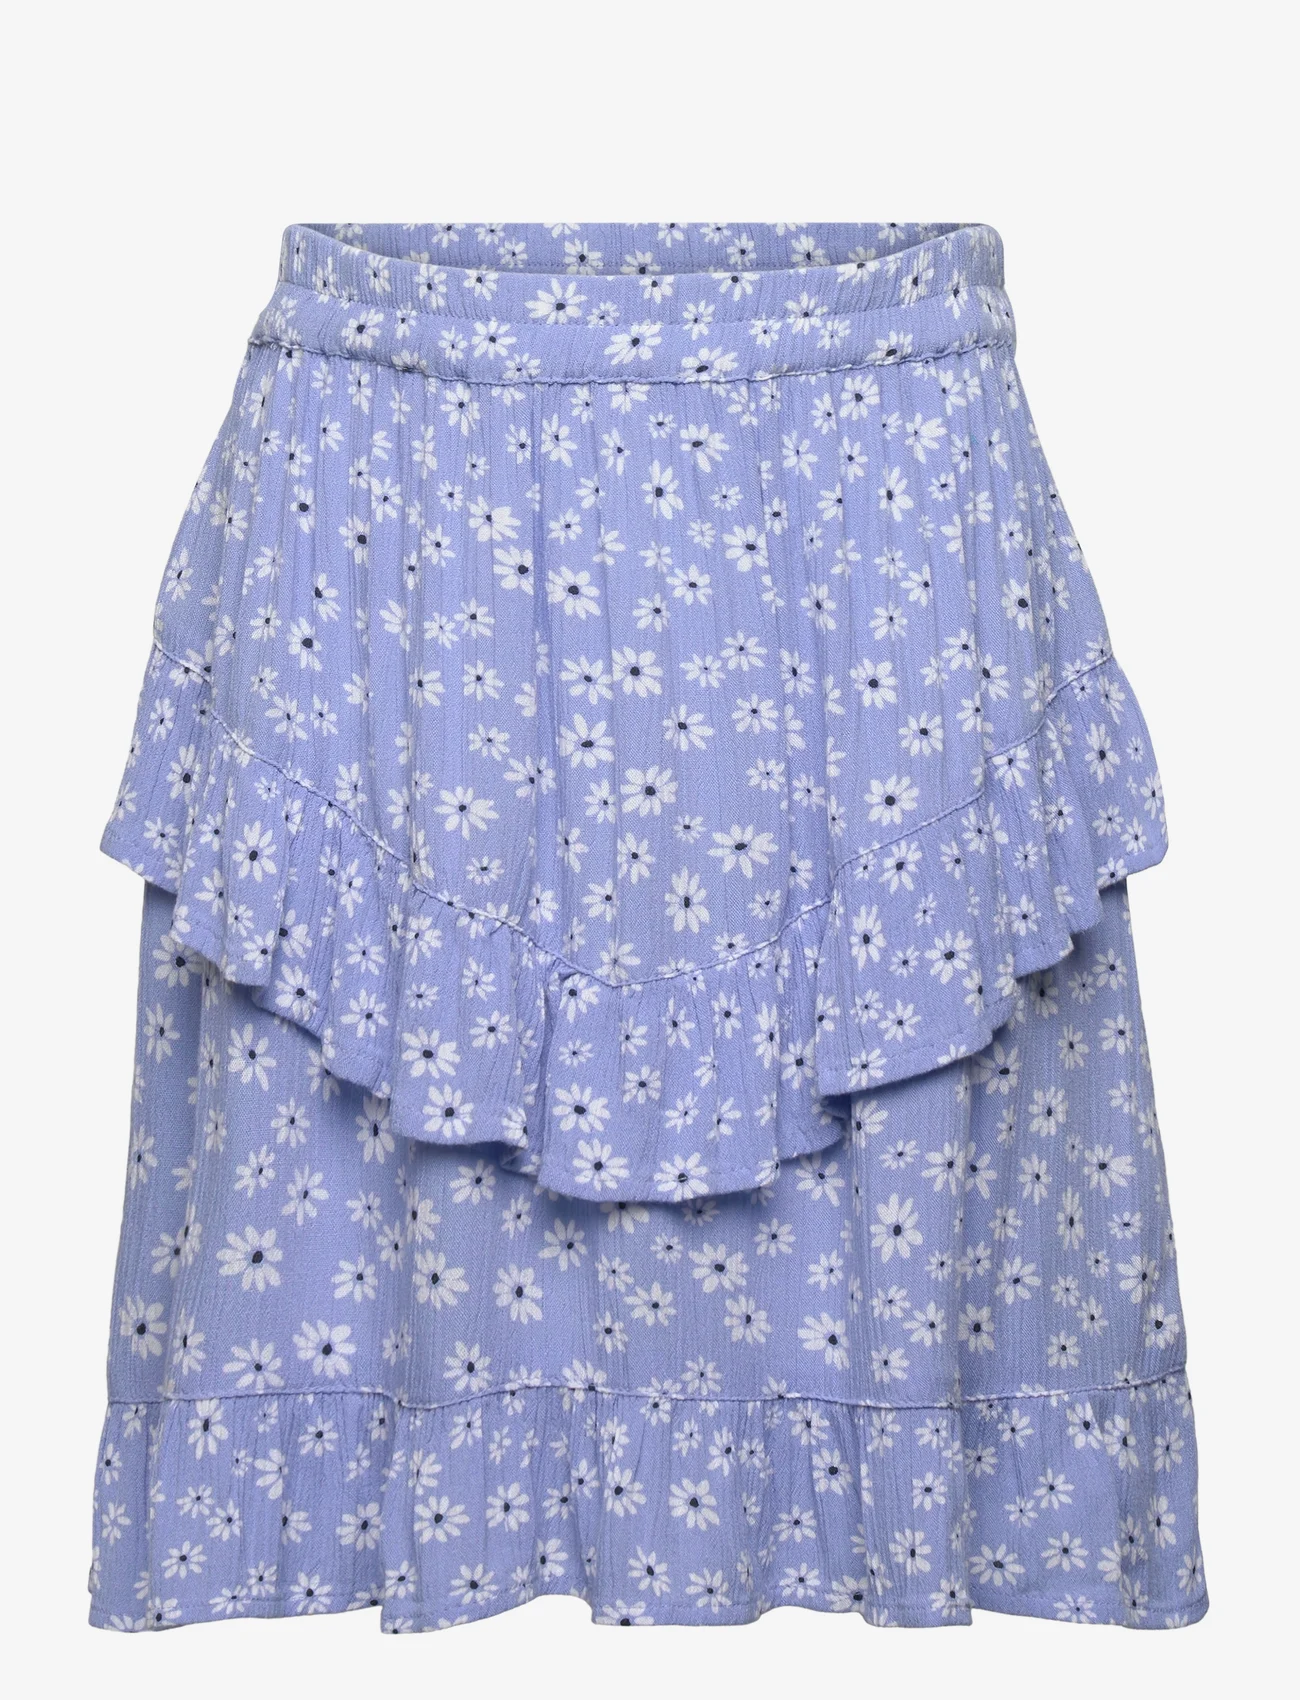 Creamie - Skirt Flower - midikjolar - bel air blue - 0